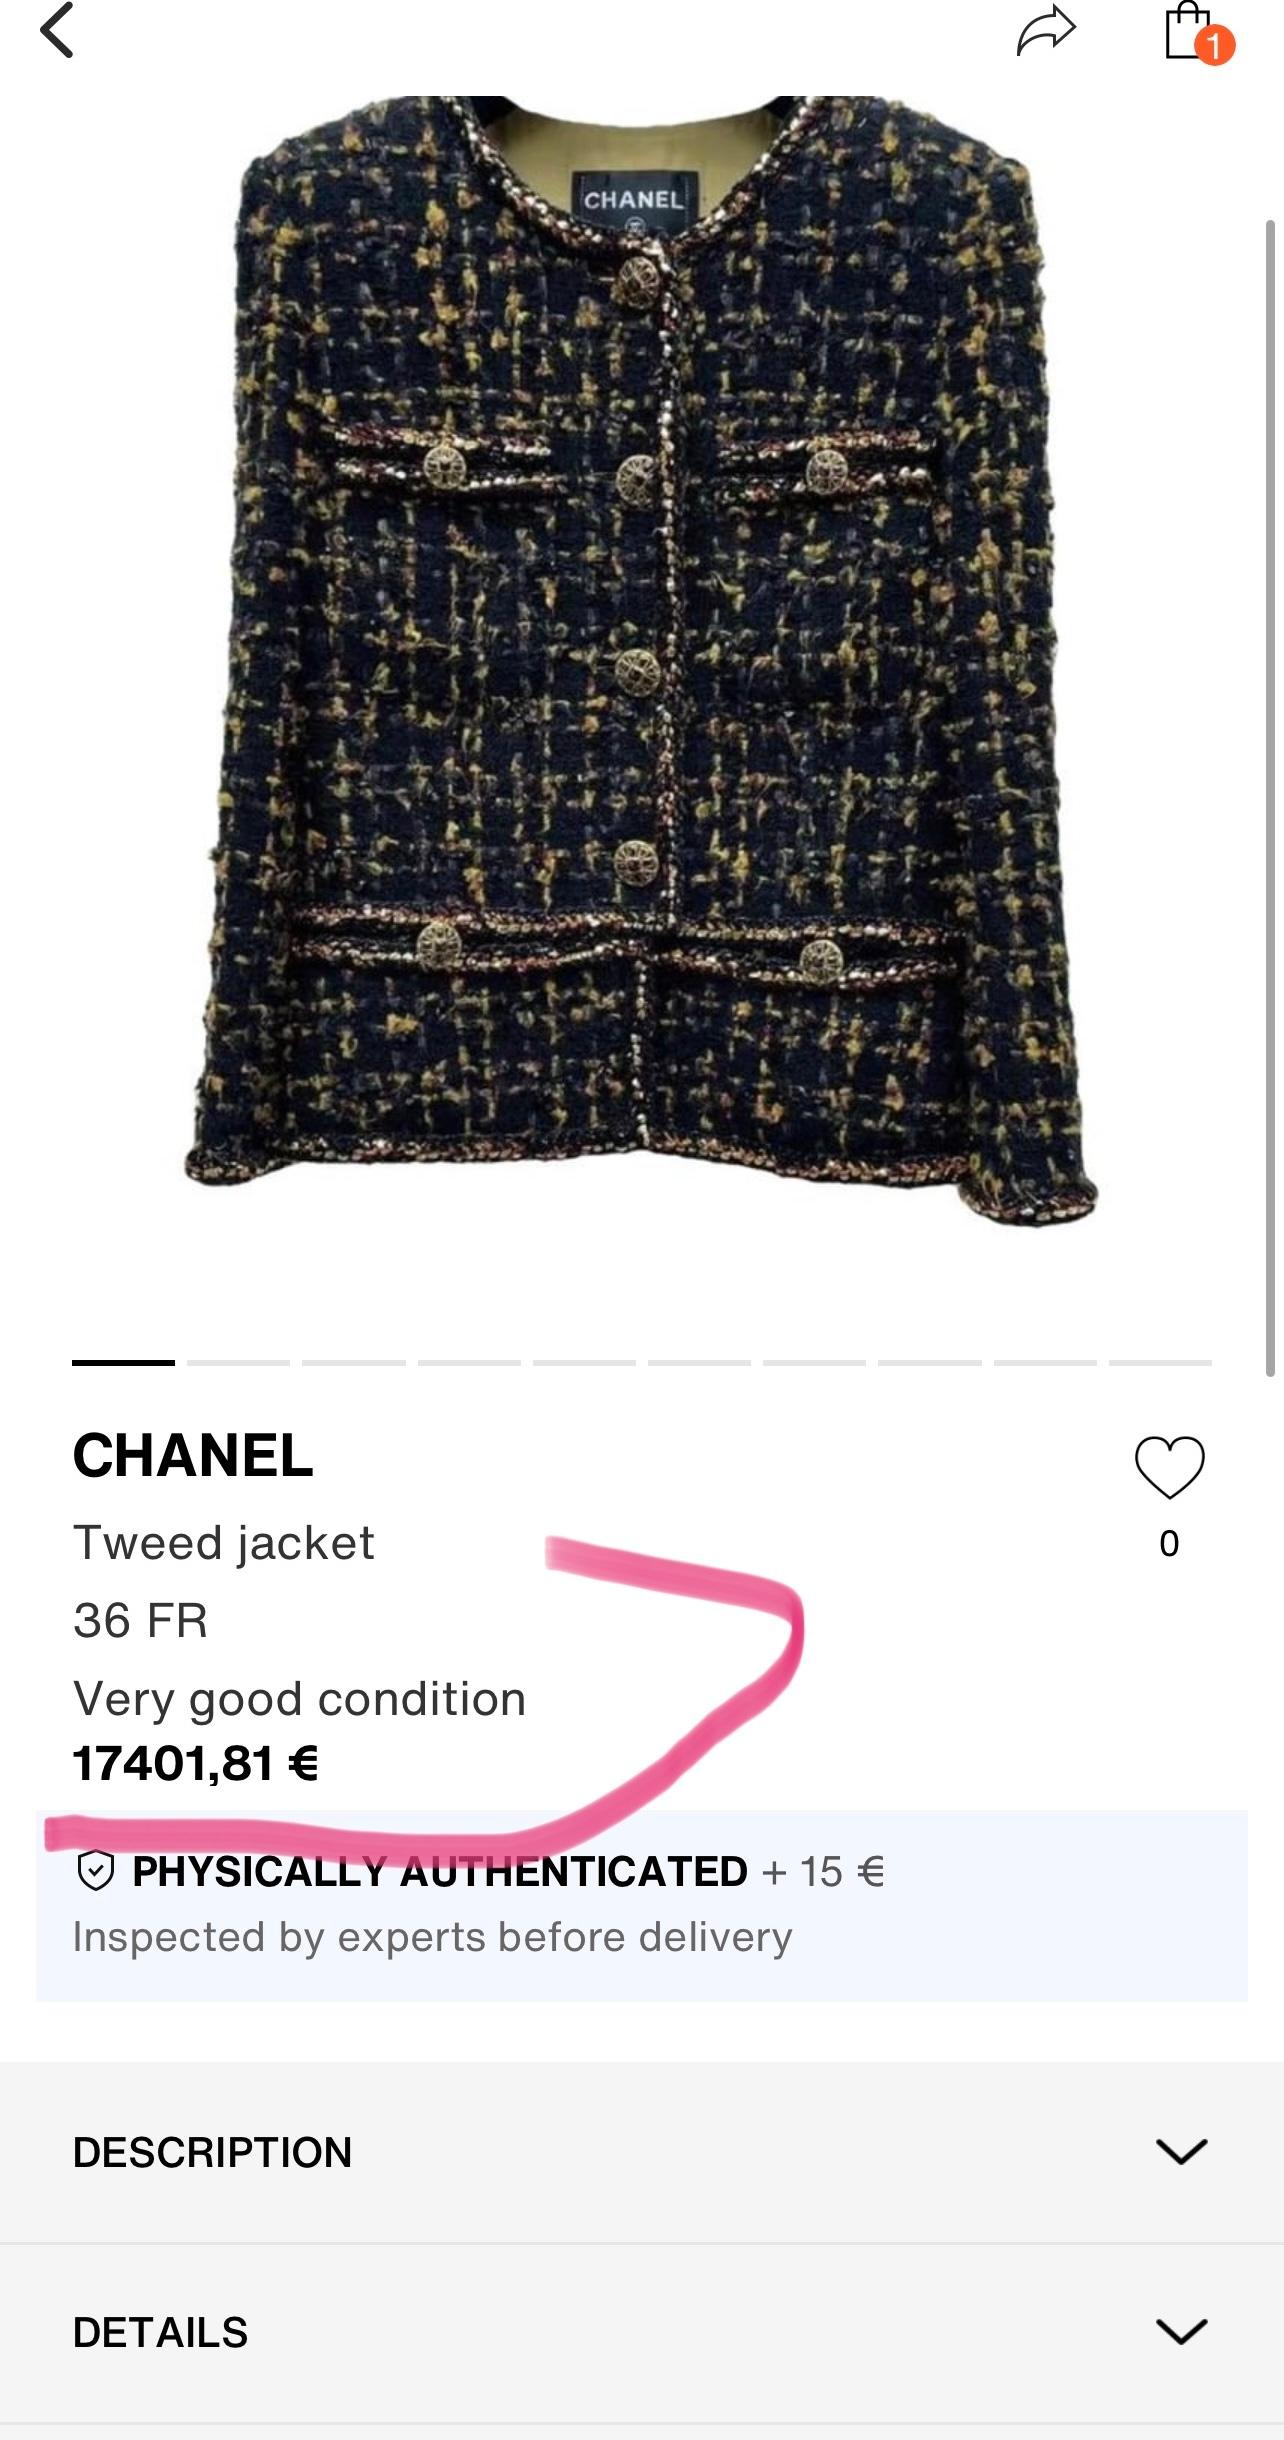 Meistgesuchte schwarze Tweedjacke Chanel aus Paris / EGYPT 2019 Pre-Fall Metiers d'Art Collection
Die Preise in anderen Quellen sind extrem hoch!
Größenbezeichnung 42 FR. Nie getragen!
- CC-Logo-Juwelen Gripoix-Tasten
- Unterschrift geflochtene